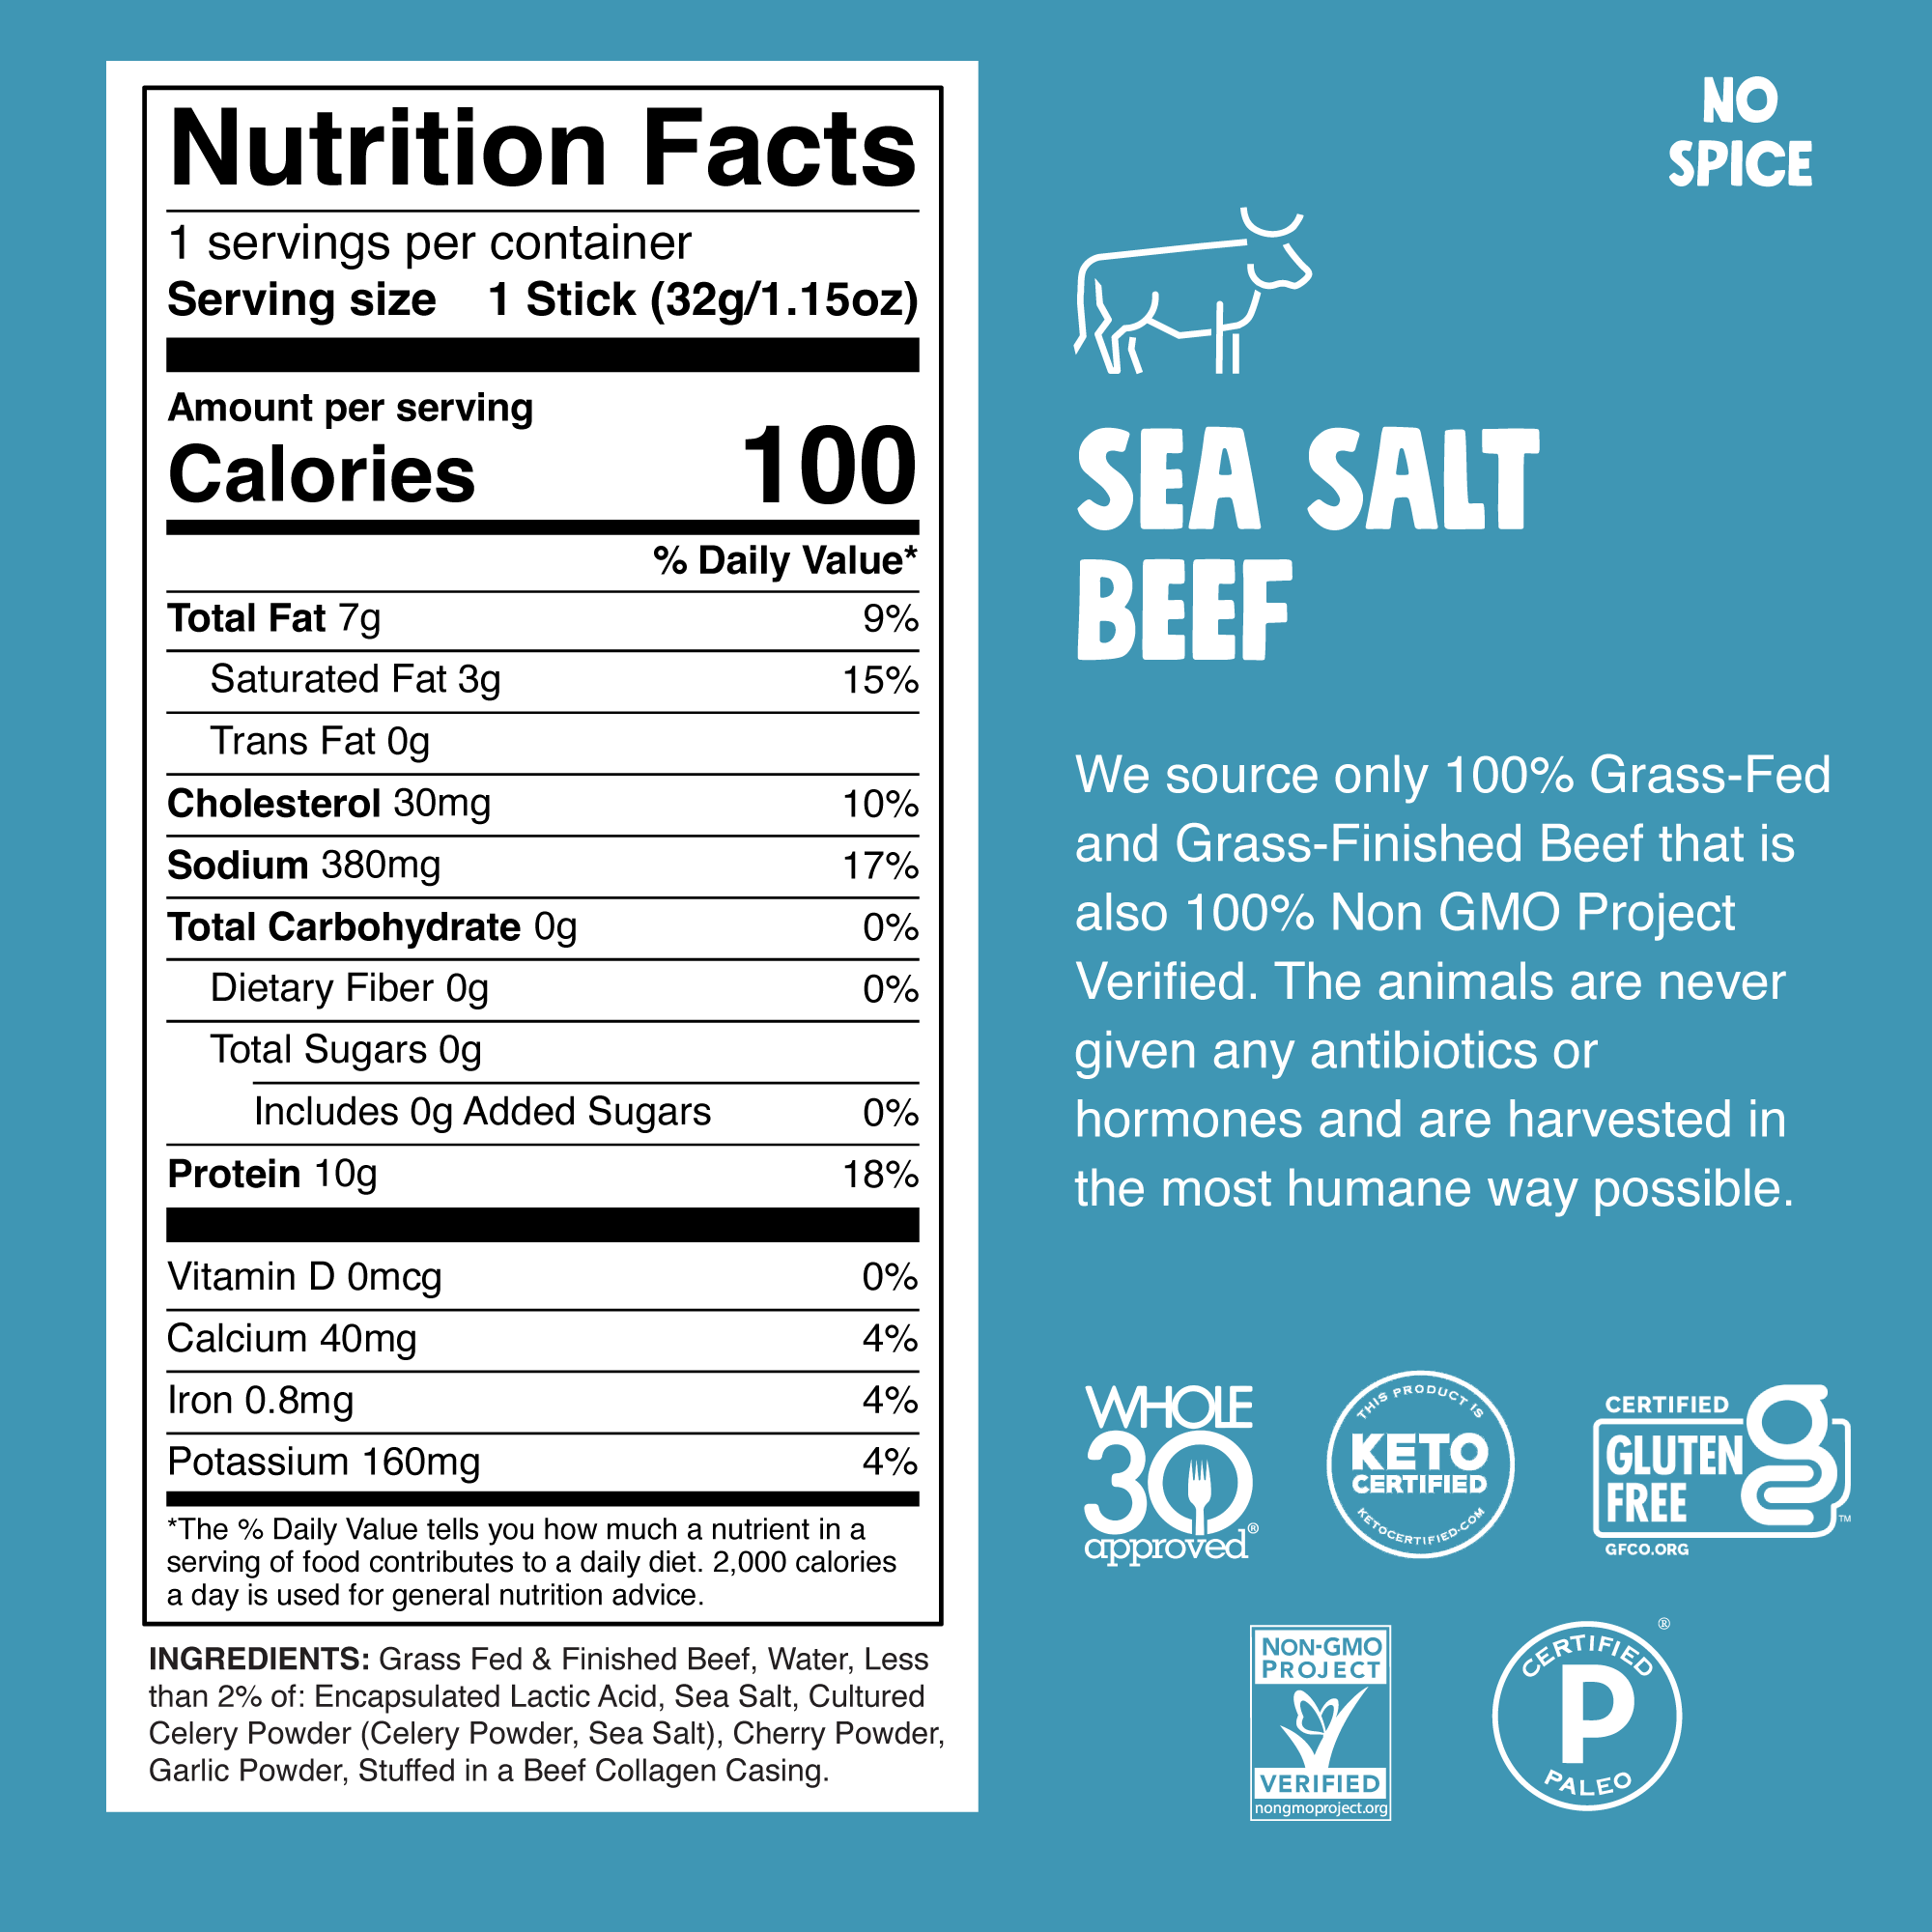 Sea Salt Beef